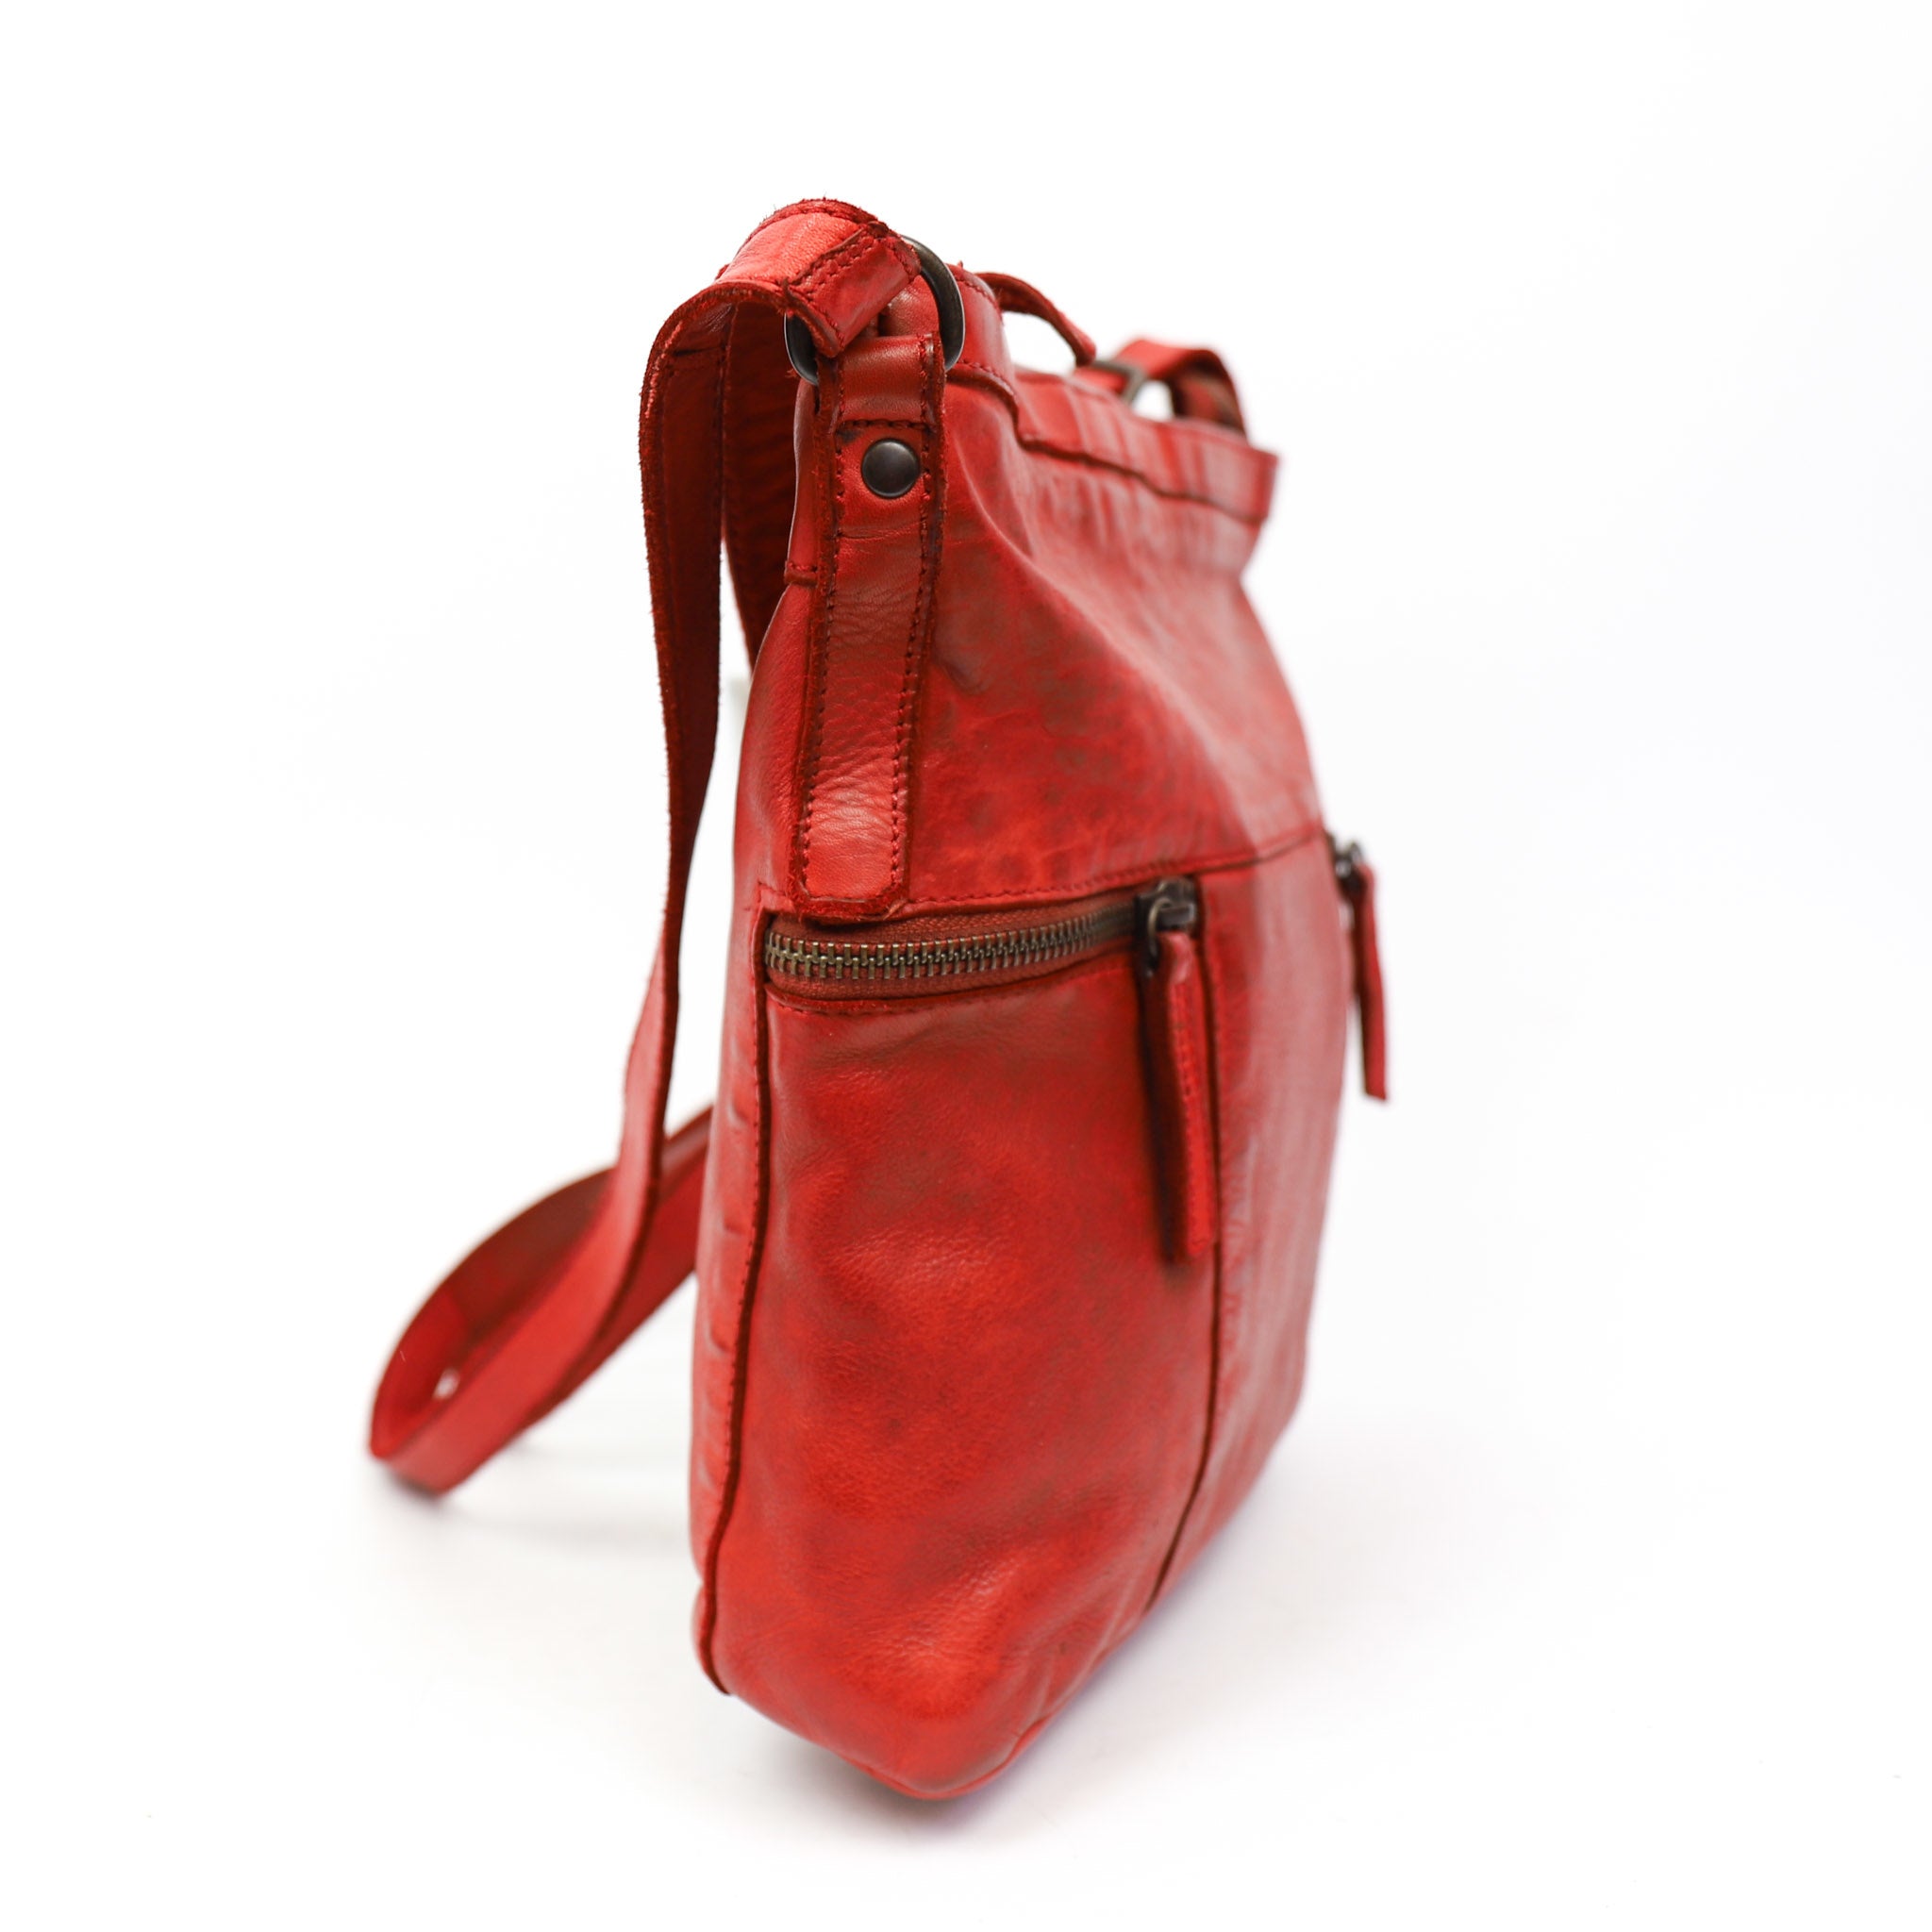 Shoulder bag 'Chessi' red - CL 35556